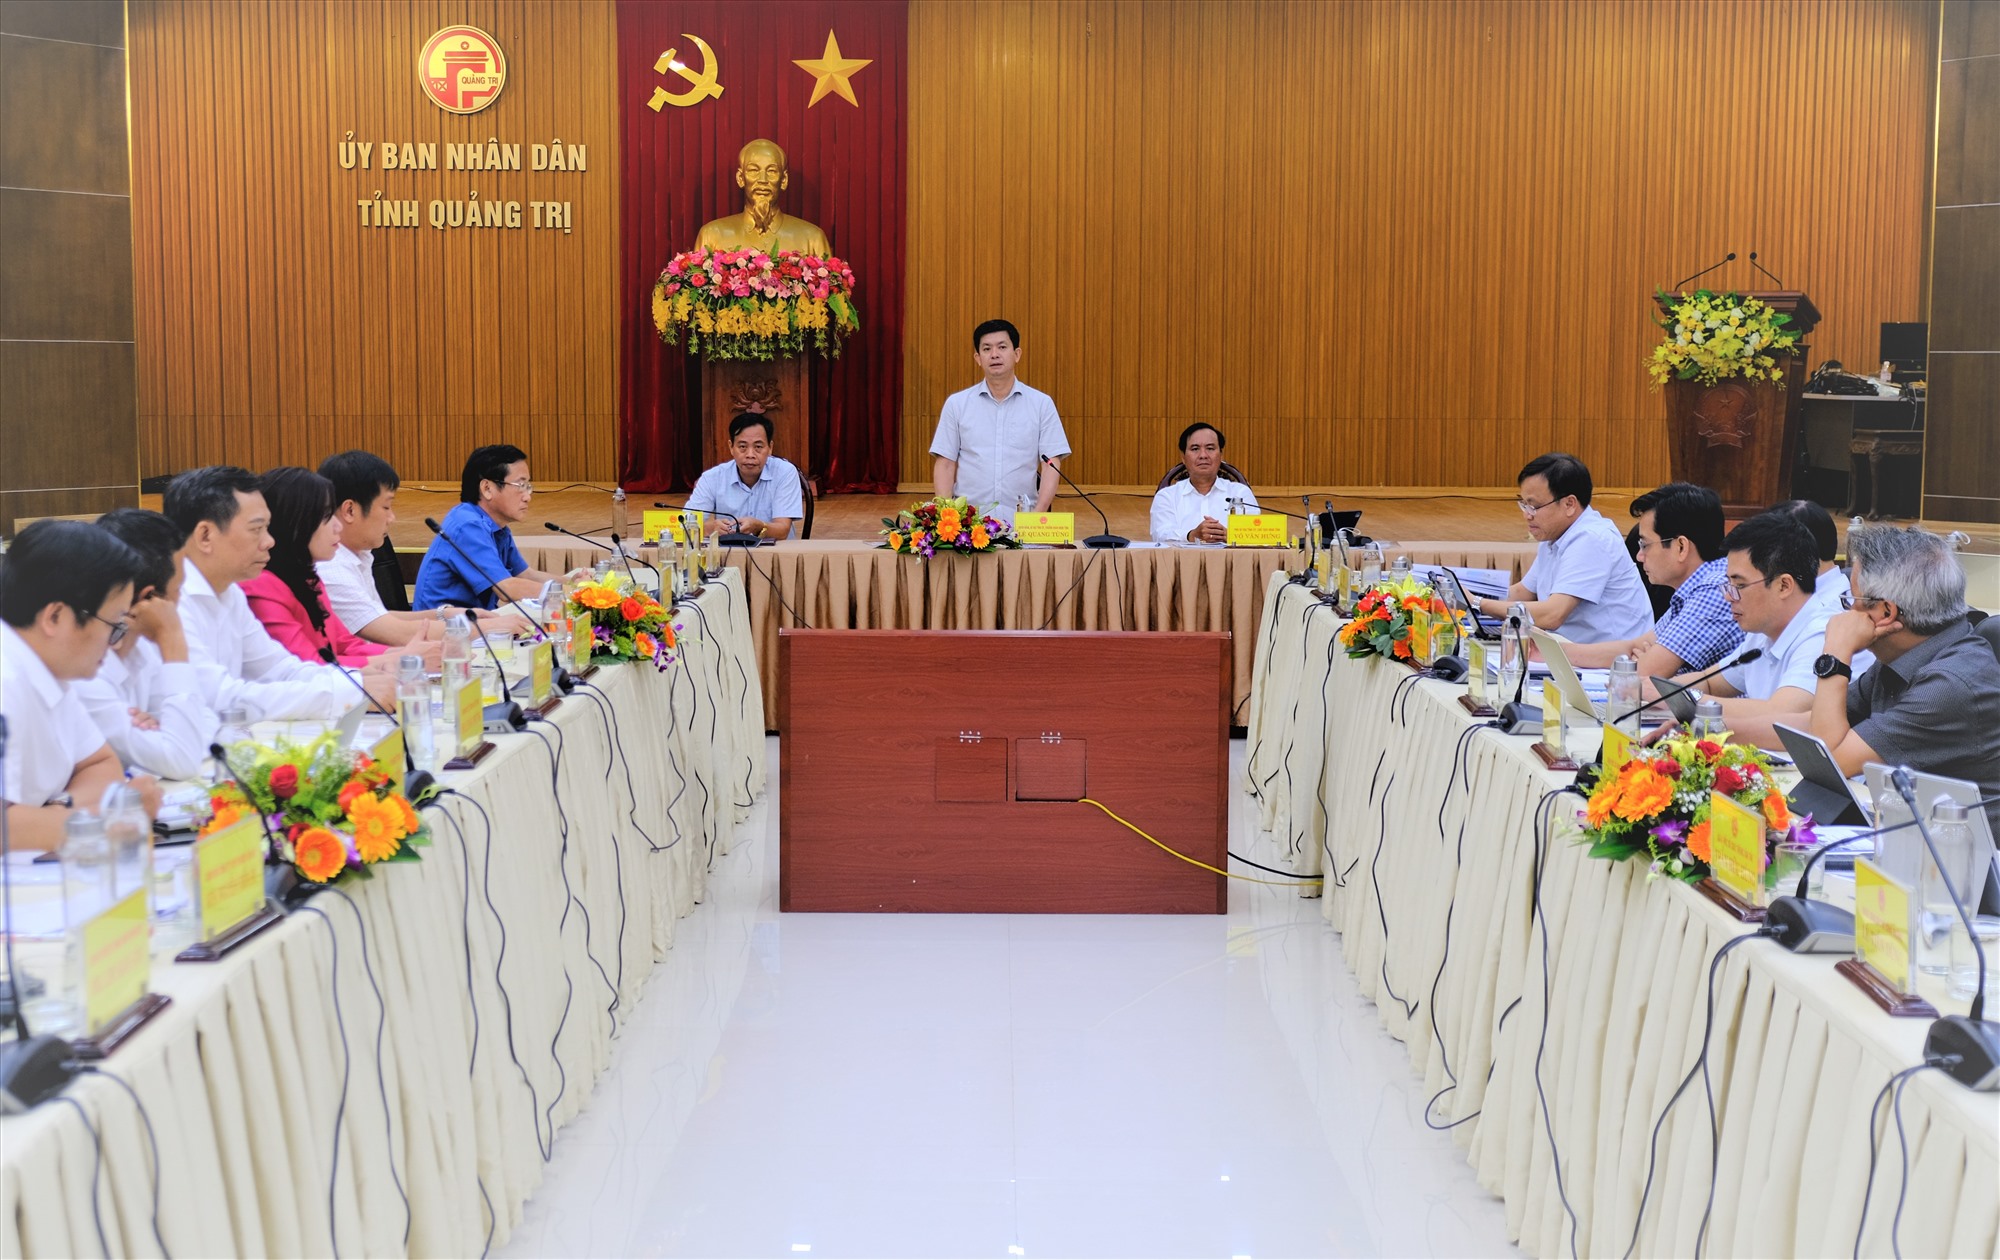 Bí thư Tỉnh ủy Lê Quang Tùng đề nghị đơn vị tư vấn nghiên cứu thêm tình hình KT-XH của tỉnh để có định hướng phù hợp đối với các nguồn lực của địa phương - Ảnh: Trần Tuyền